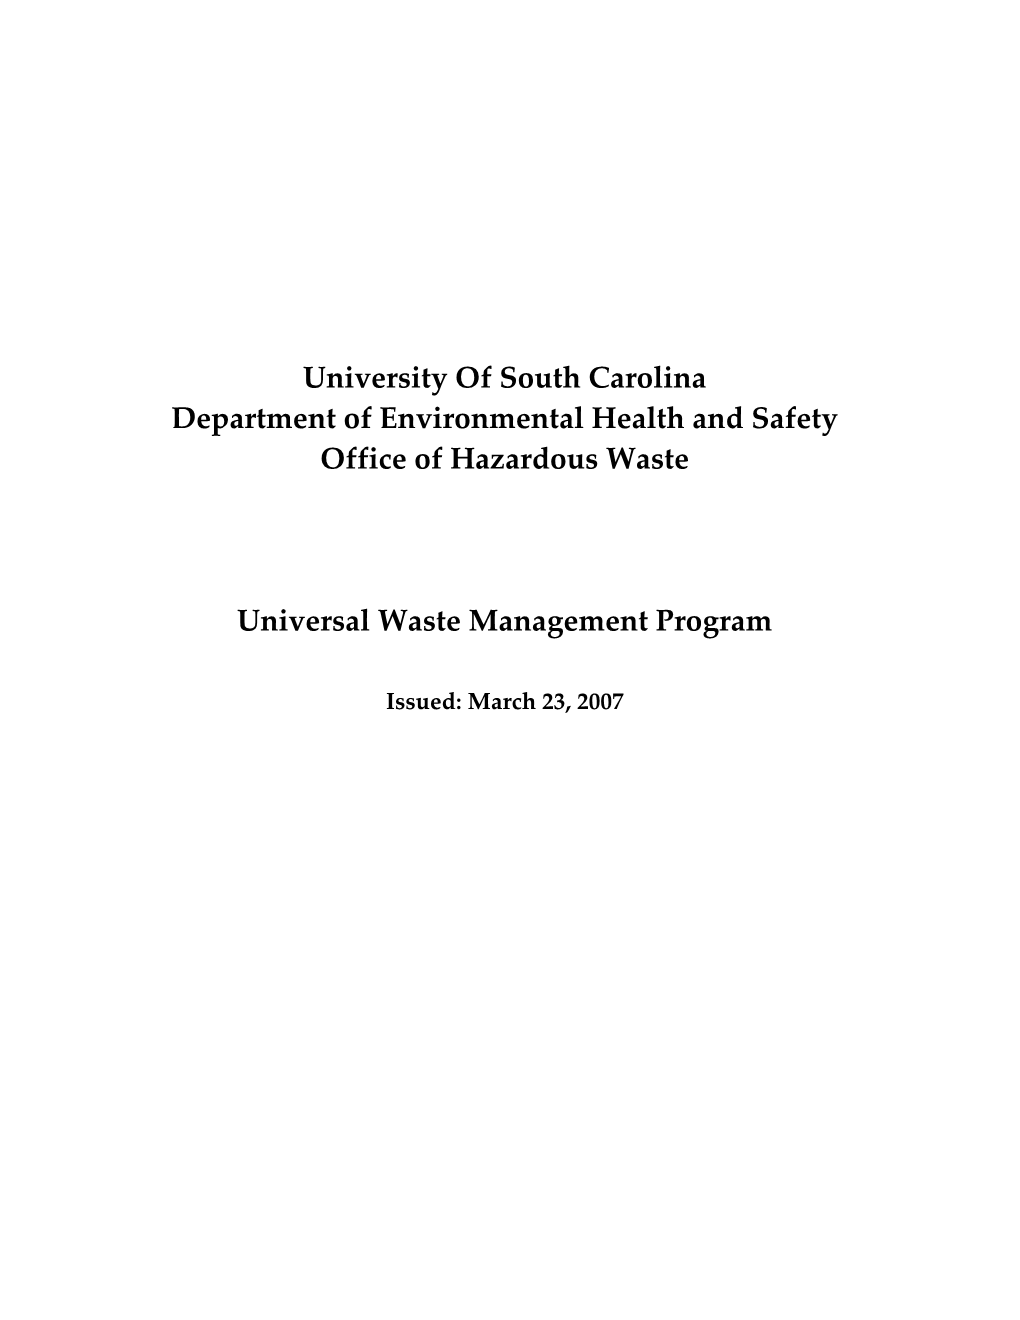 EHS M 025 Universal Waste Management Program